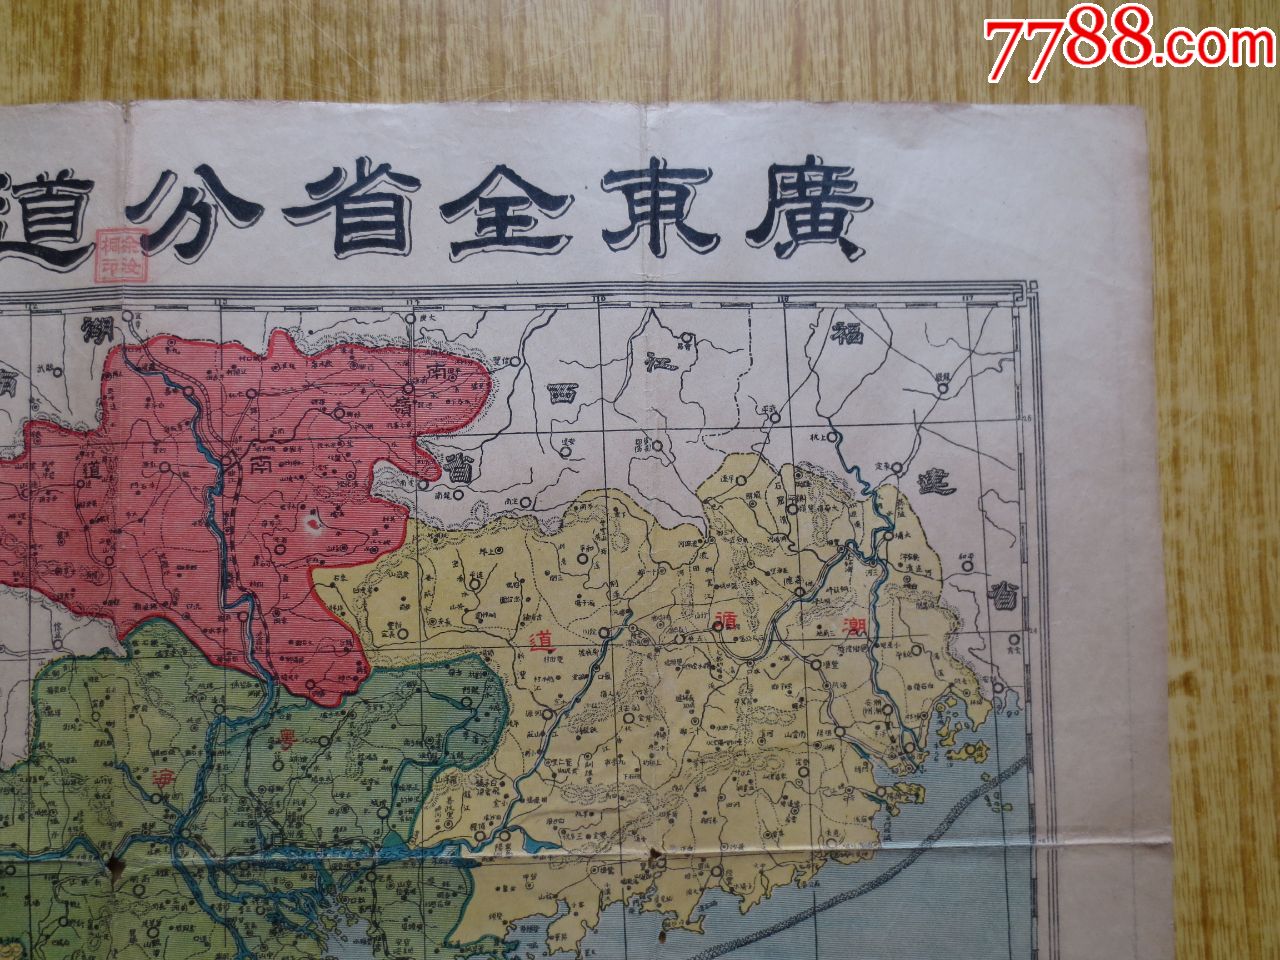 民国时期【广东全省分道物产地图】-左上角物质矿产一览表印有:『新会